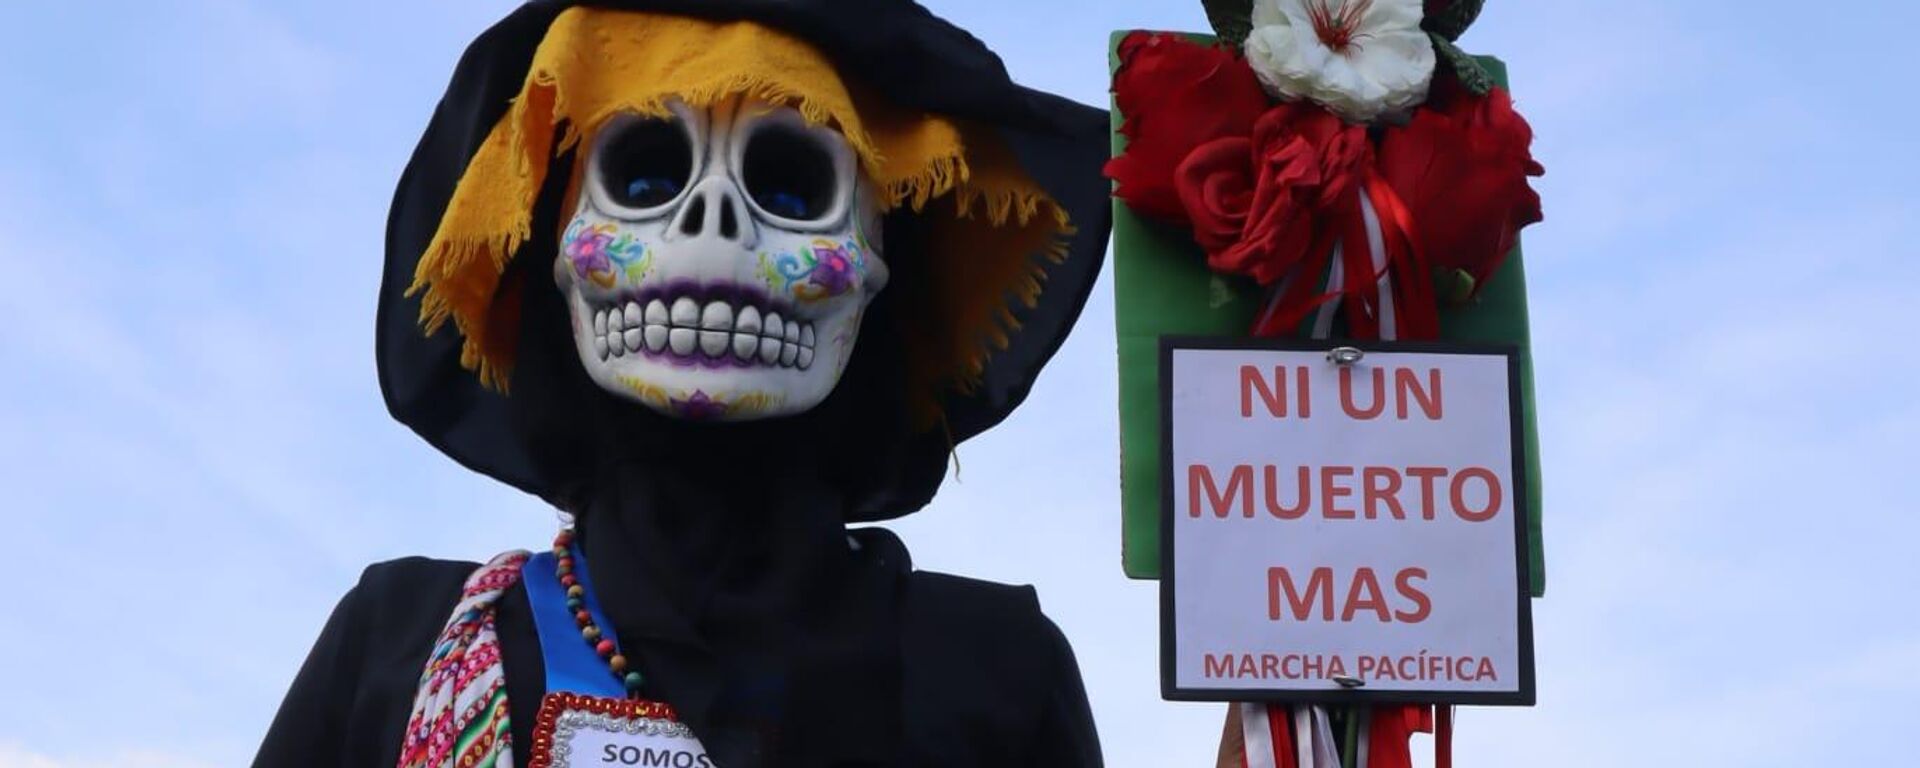 Diversas protestas se registraron en distintos puntos del Perú este 4 de marzo - Sputnik Mundo, 1920, 05.03.2023